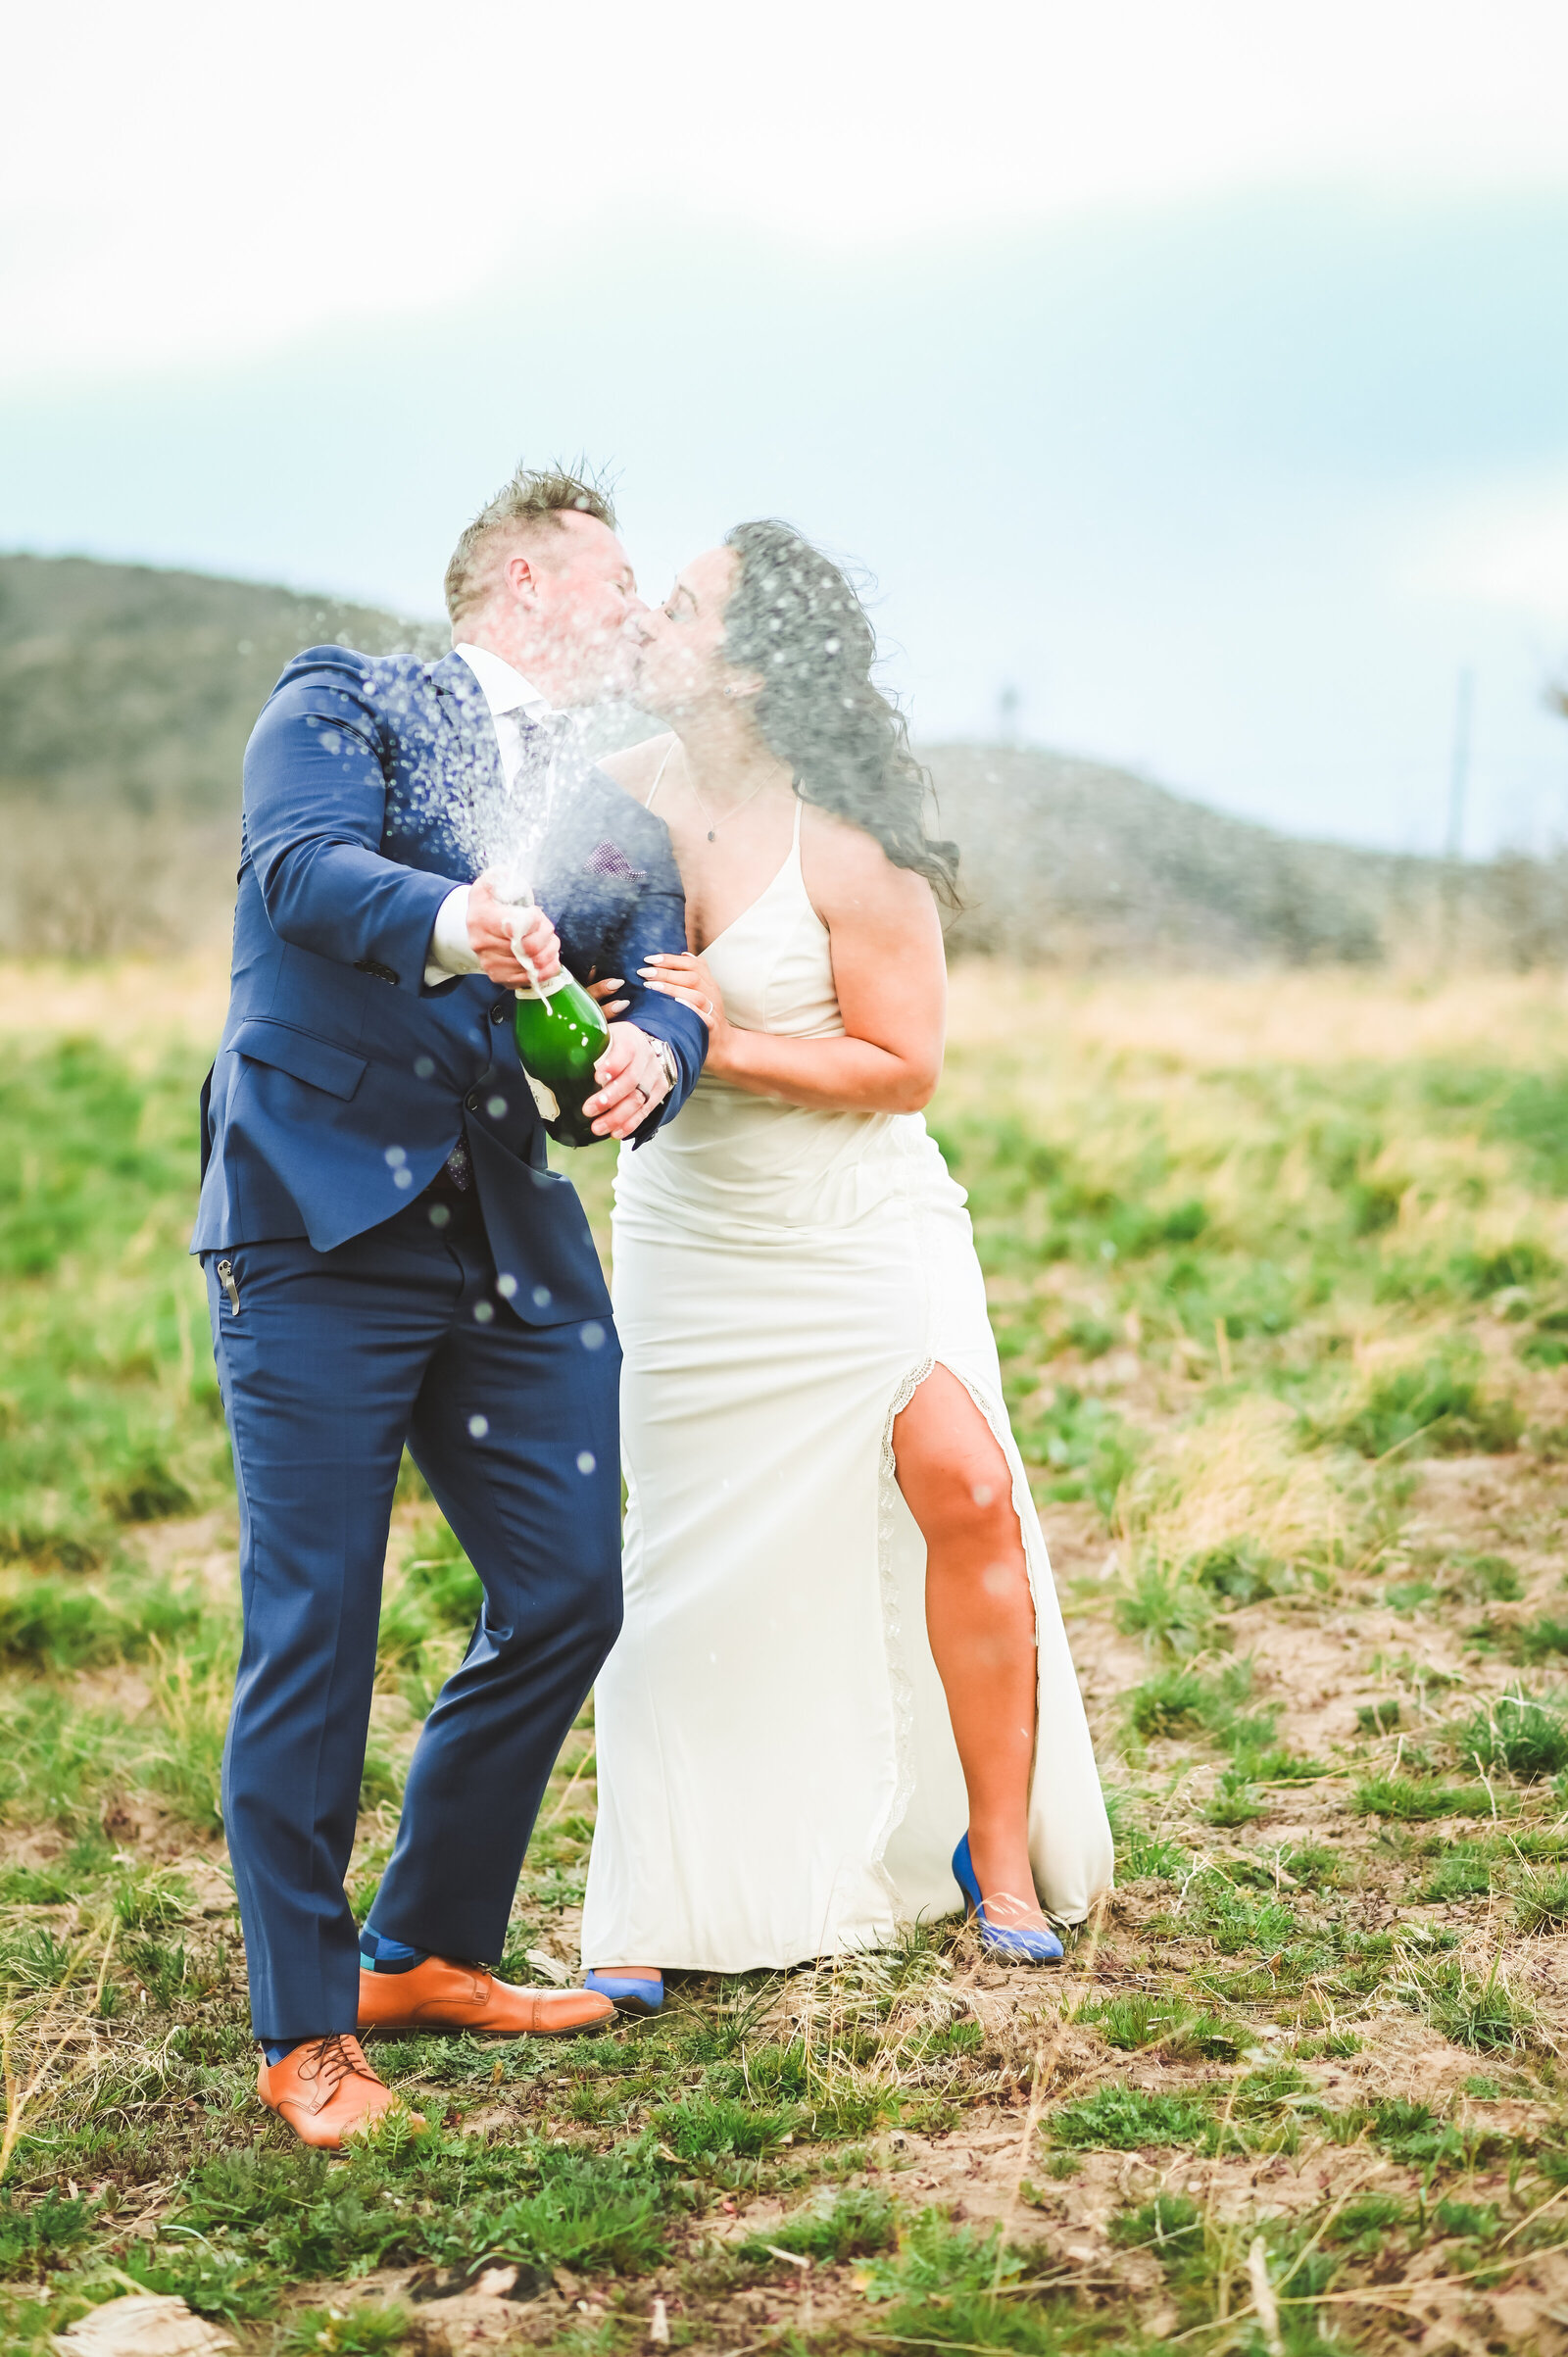 Jackson Hole photographers capture couple celebrating with champagne pop